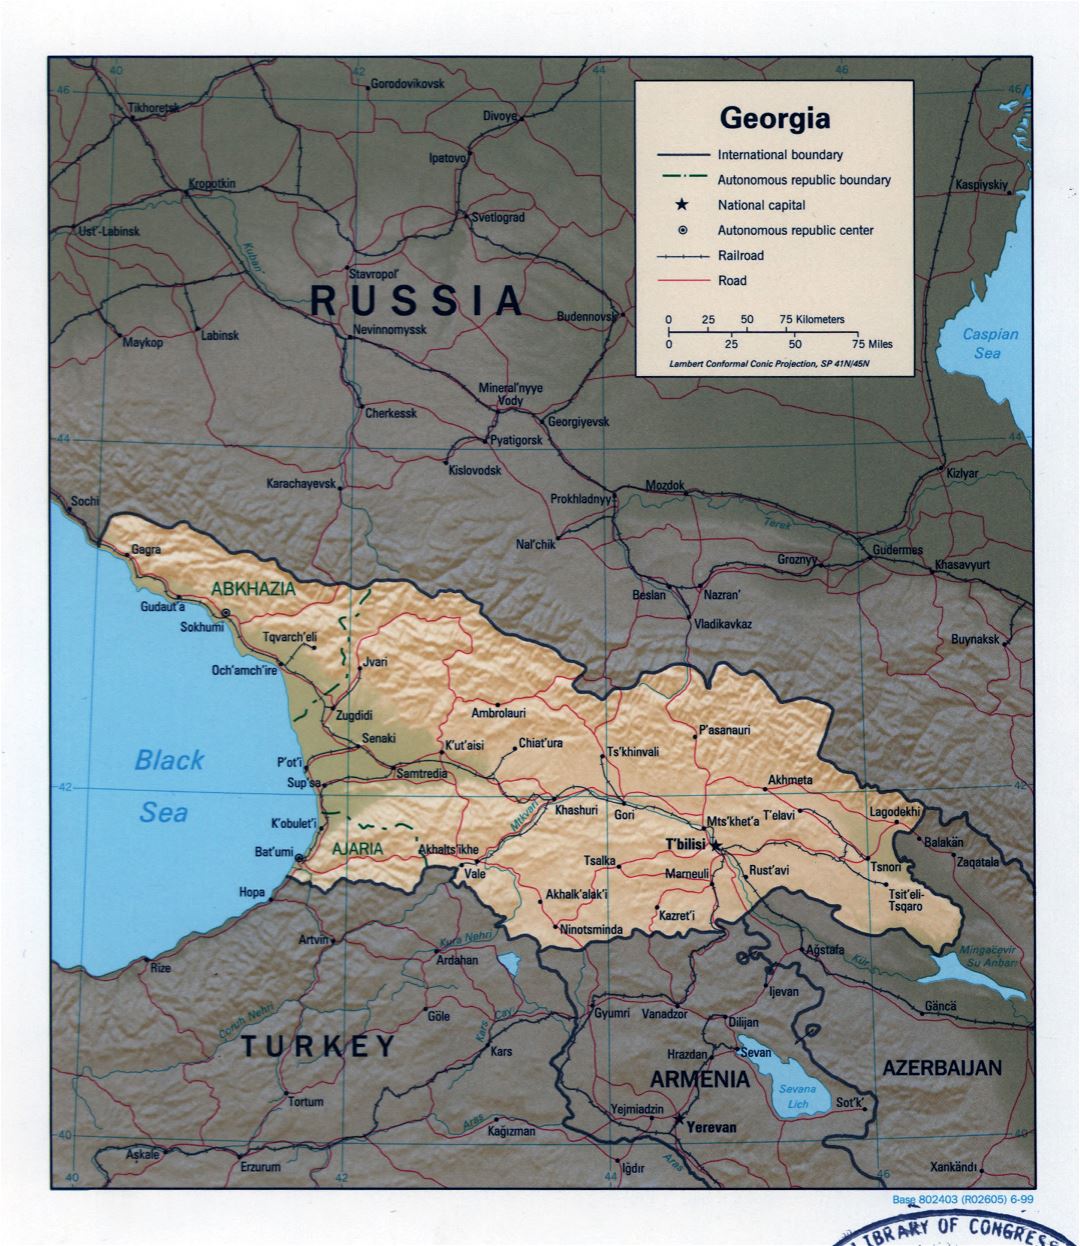 Grande detallado mapa político de Georgia con relieve, carreteras, ferrocarriles y principales ciudades - 1999